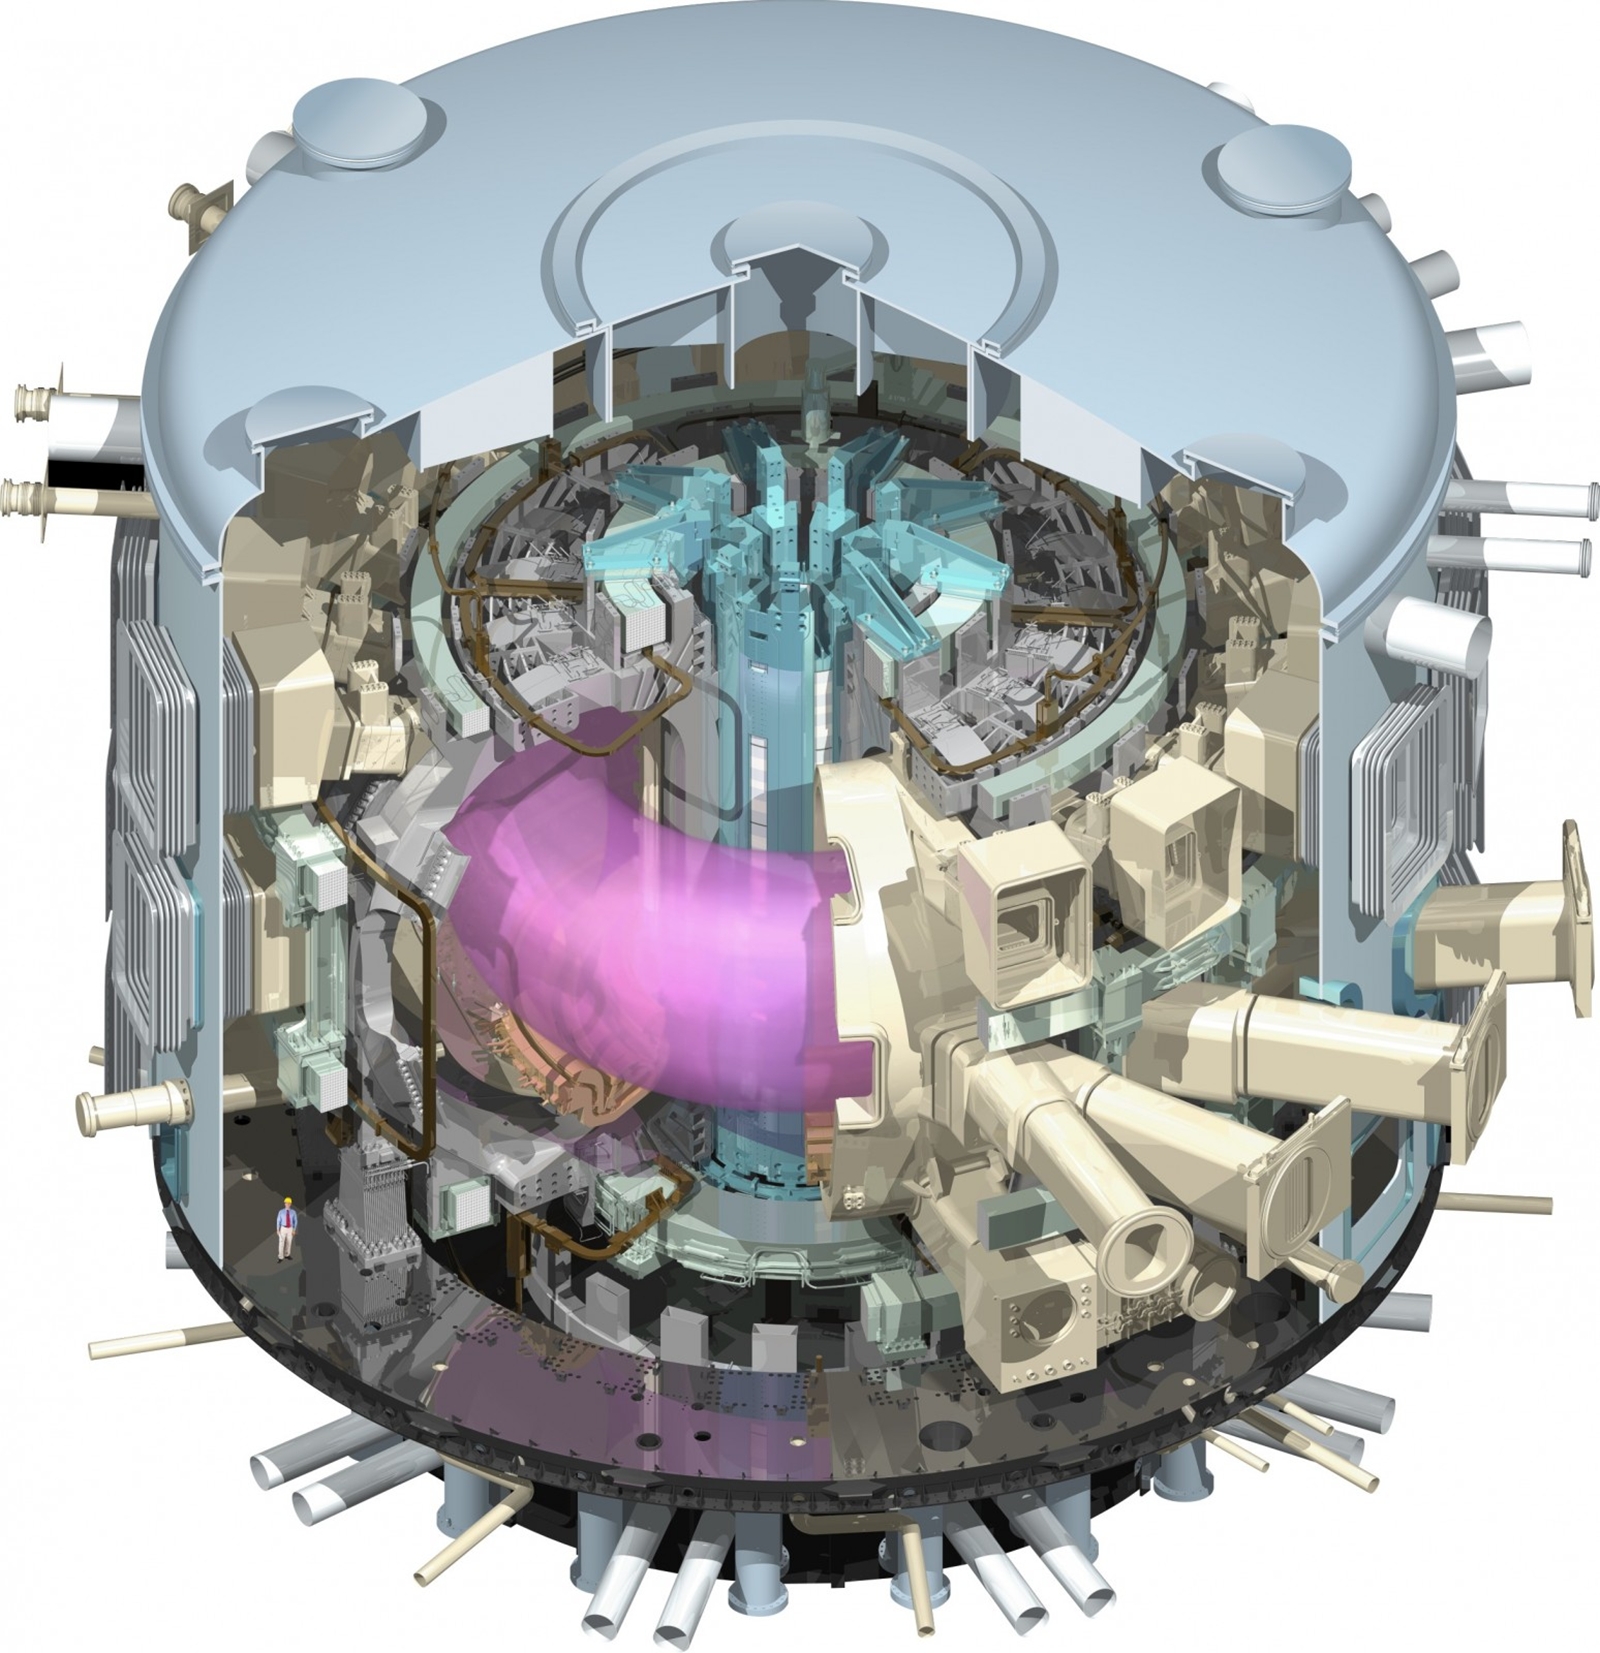 Une coupe du réacteur Iter en fonctionnement avec le plasma chauffé en violet. Crédit : www.iter.org